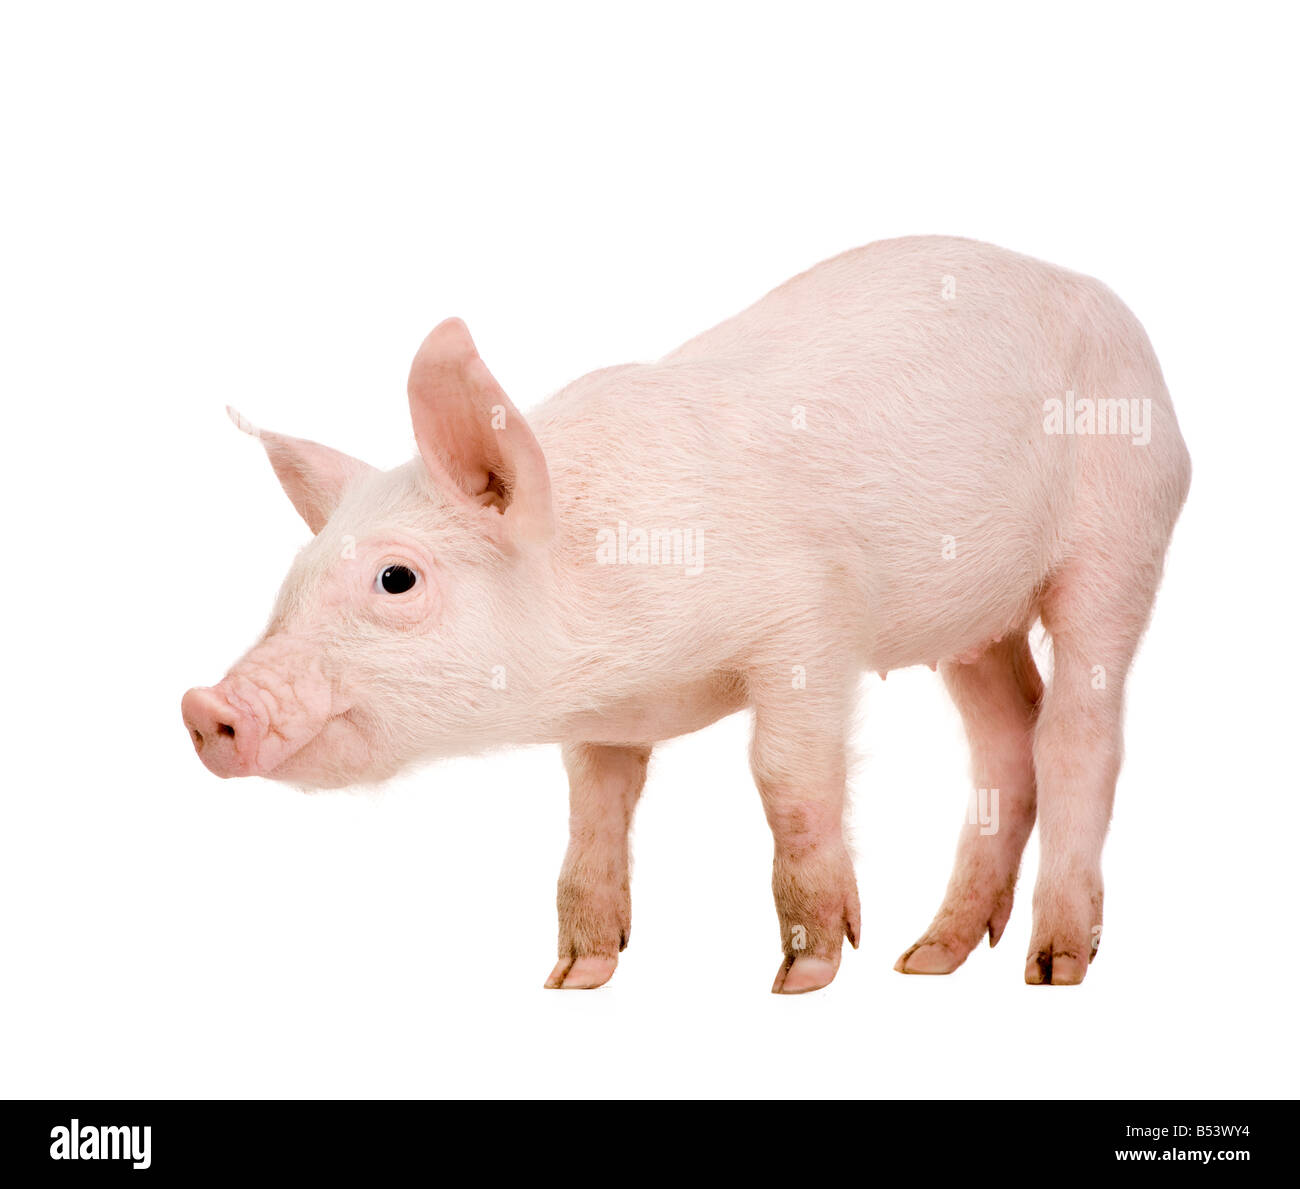 Di maiale giovane 1 mese di fronte a uno sfondo bianco Foto Stock